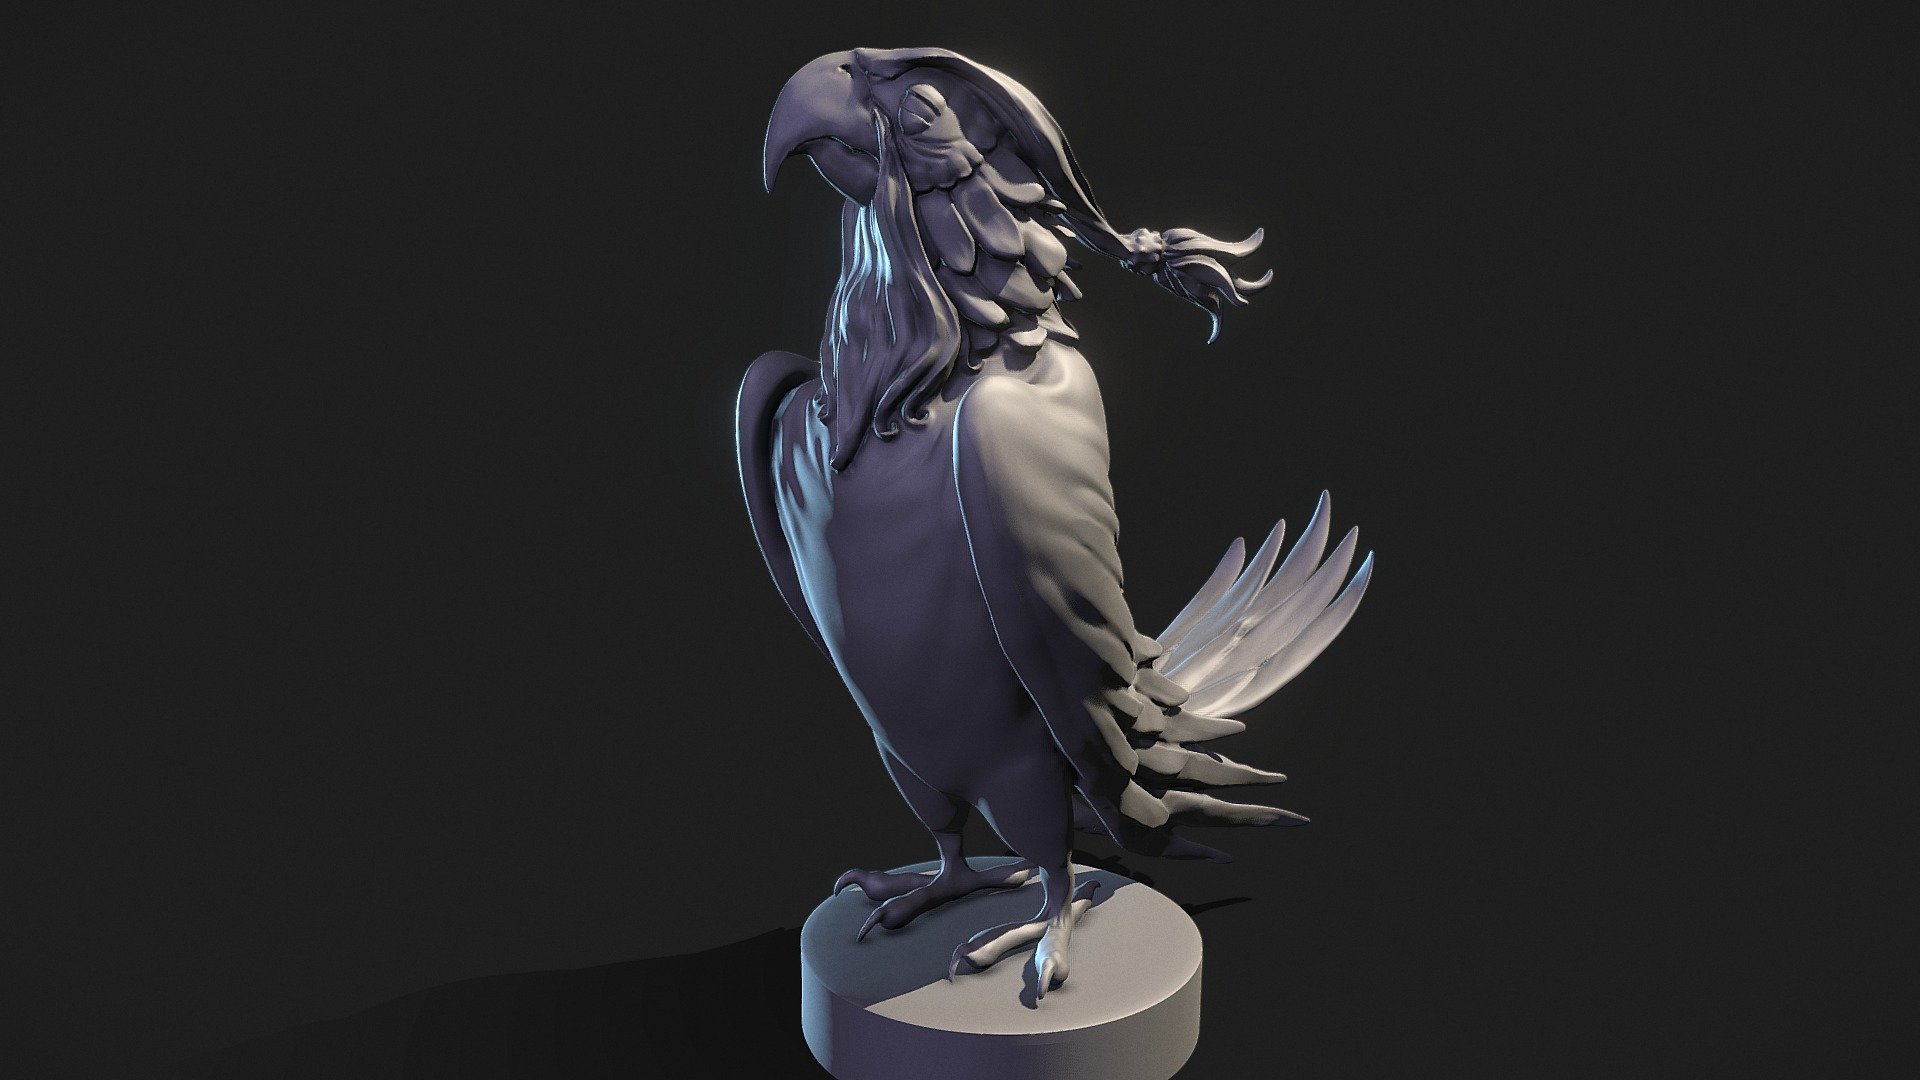 Perroquet 3d Print - Parrot-Sculpt 3d Print - 3D model by Faouzi Hamida "FaZ" (@sensokan) 3d model